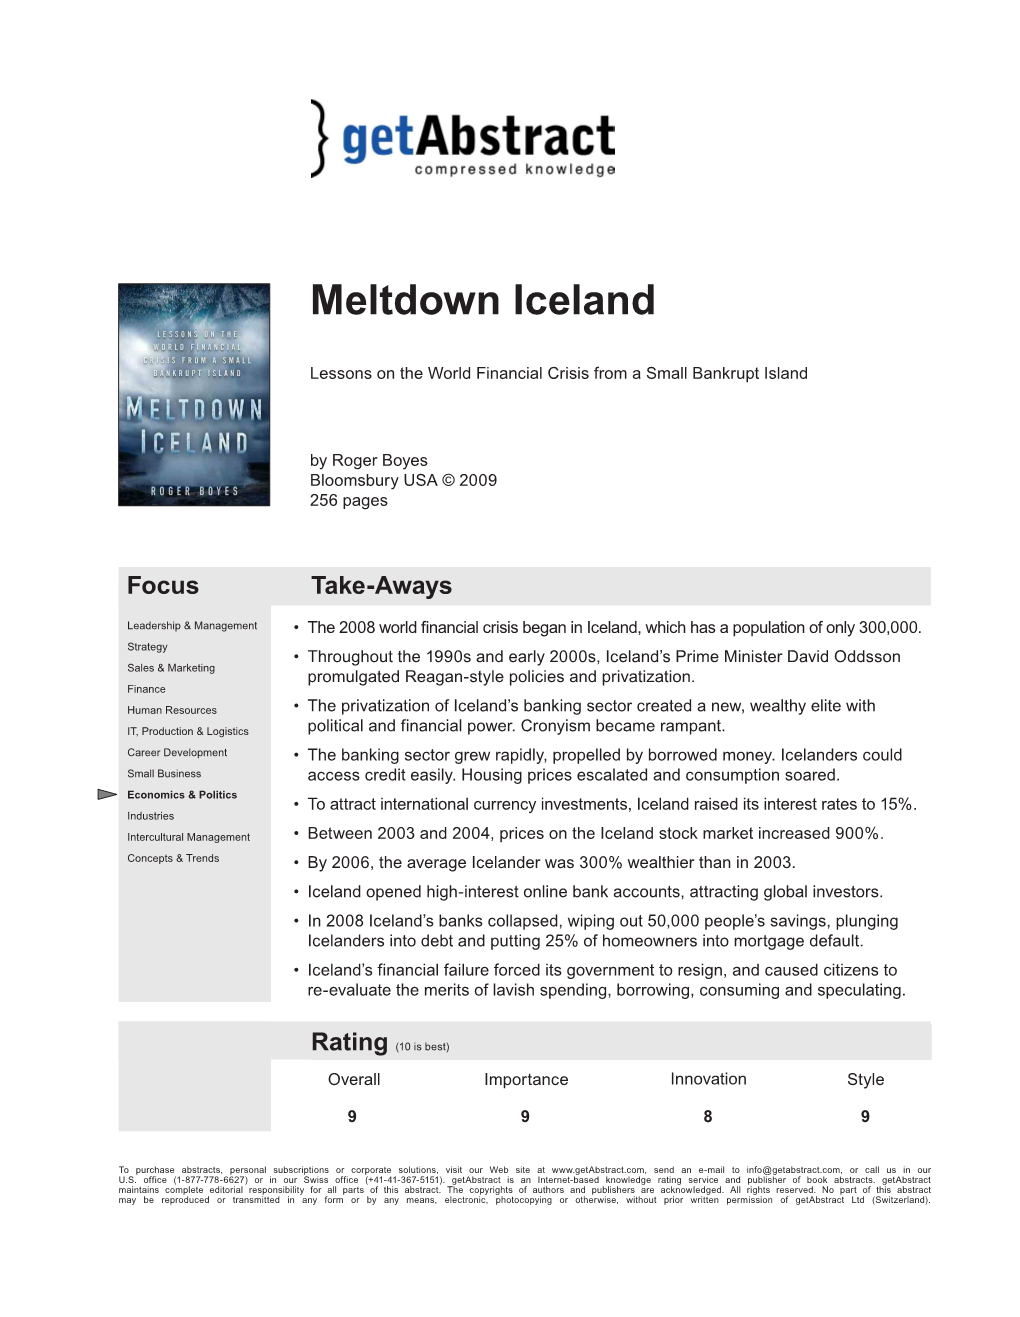 Meltdown Iceland